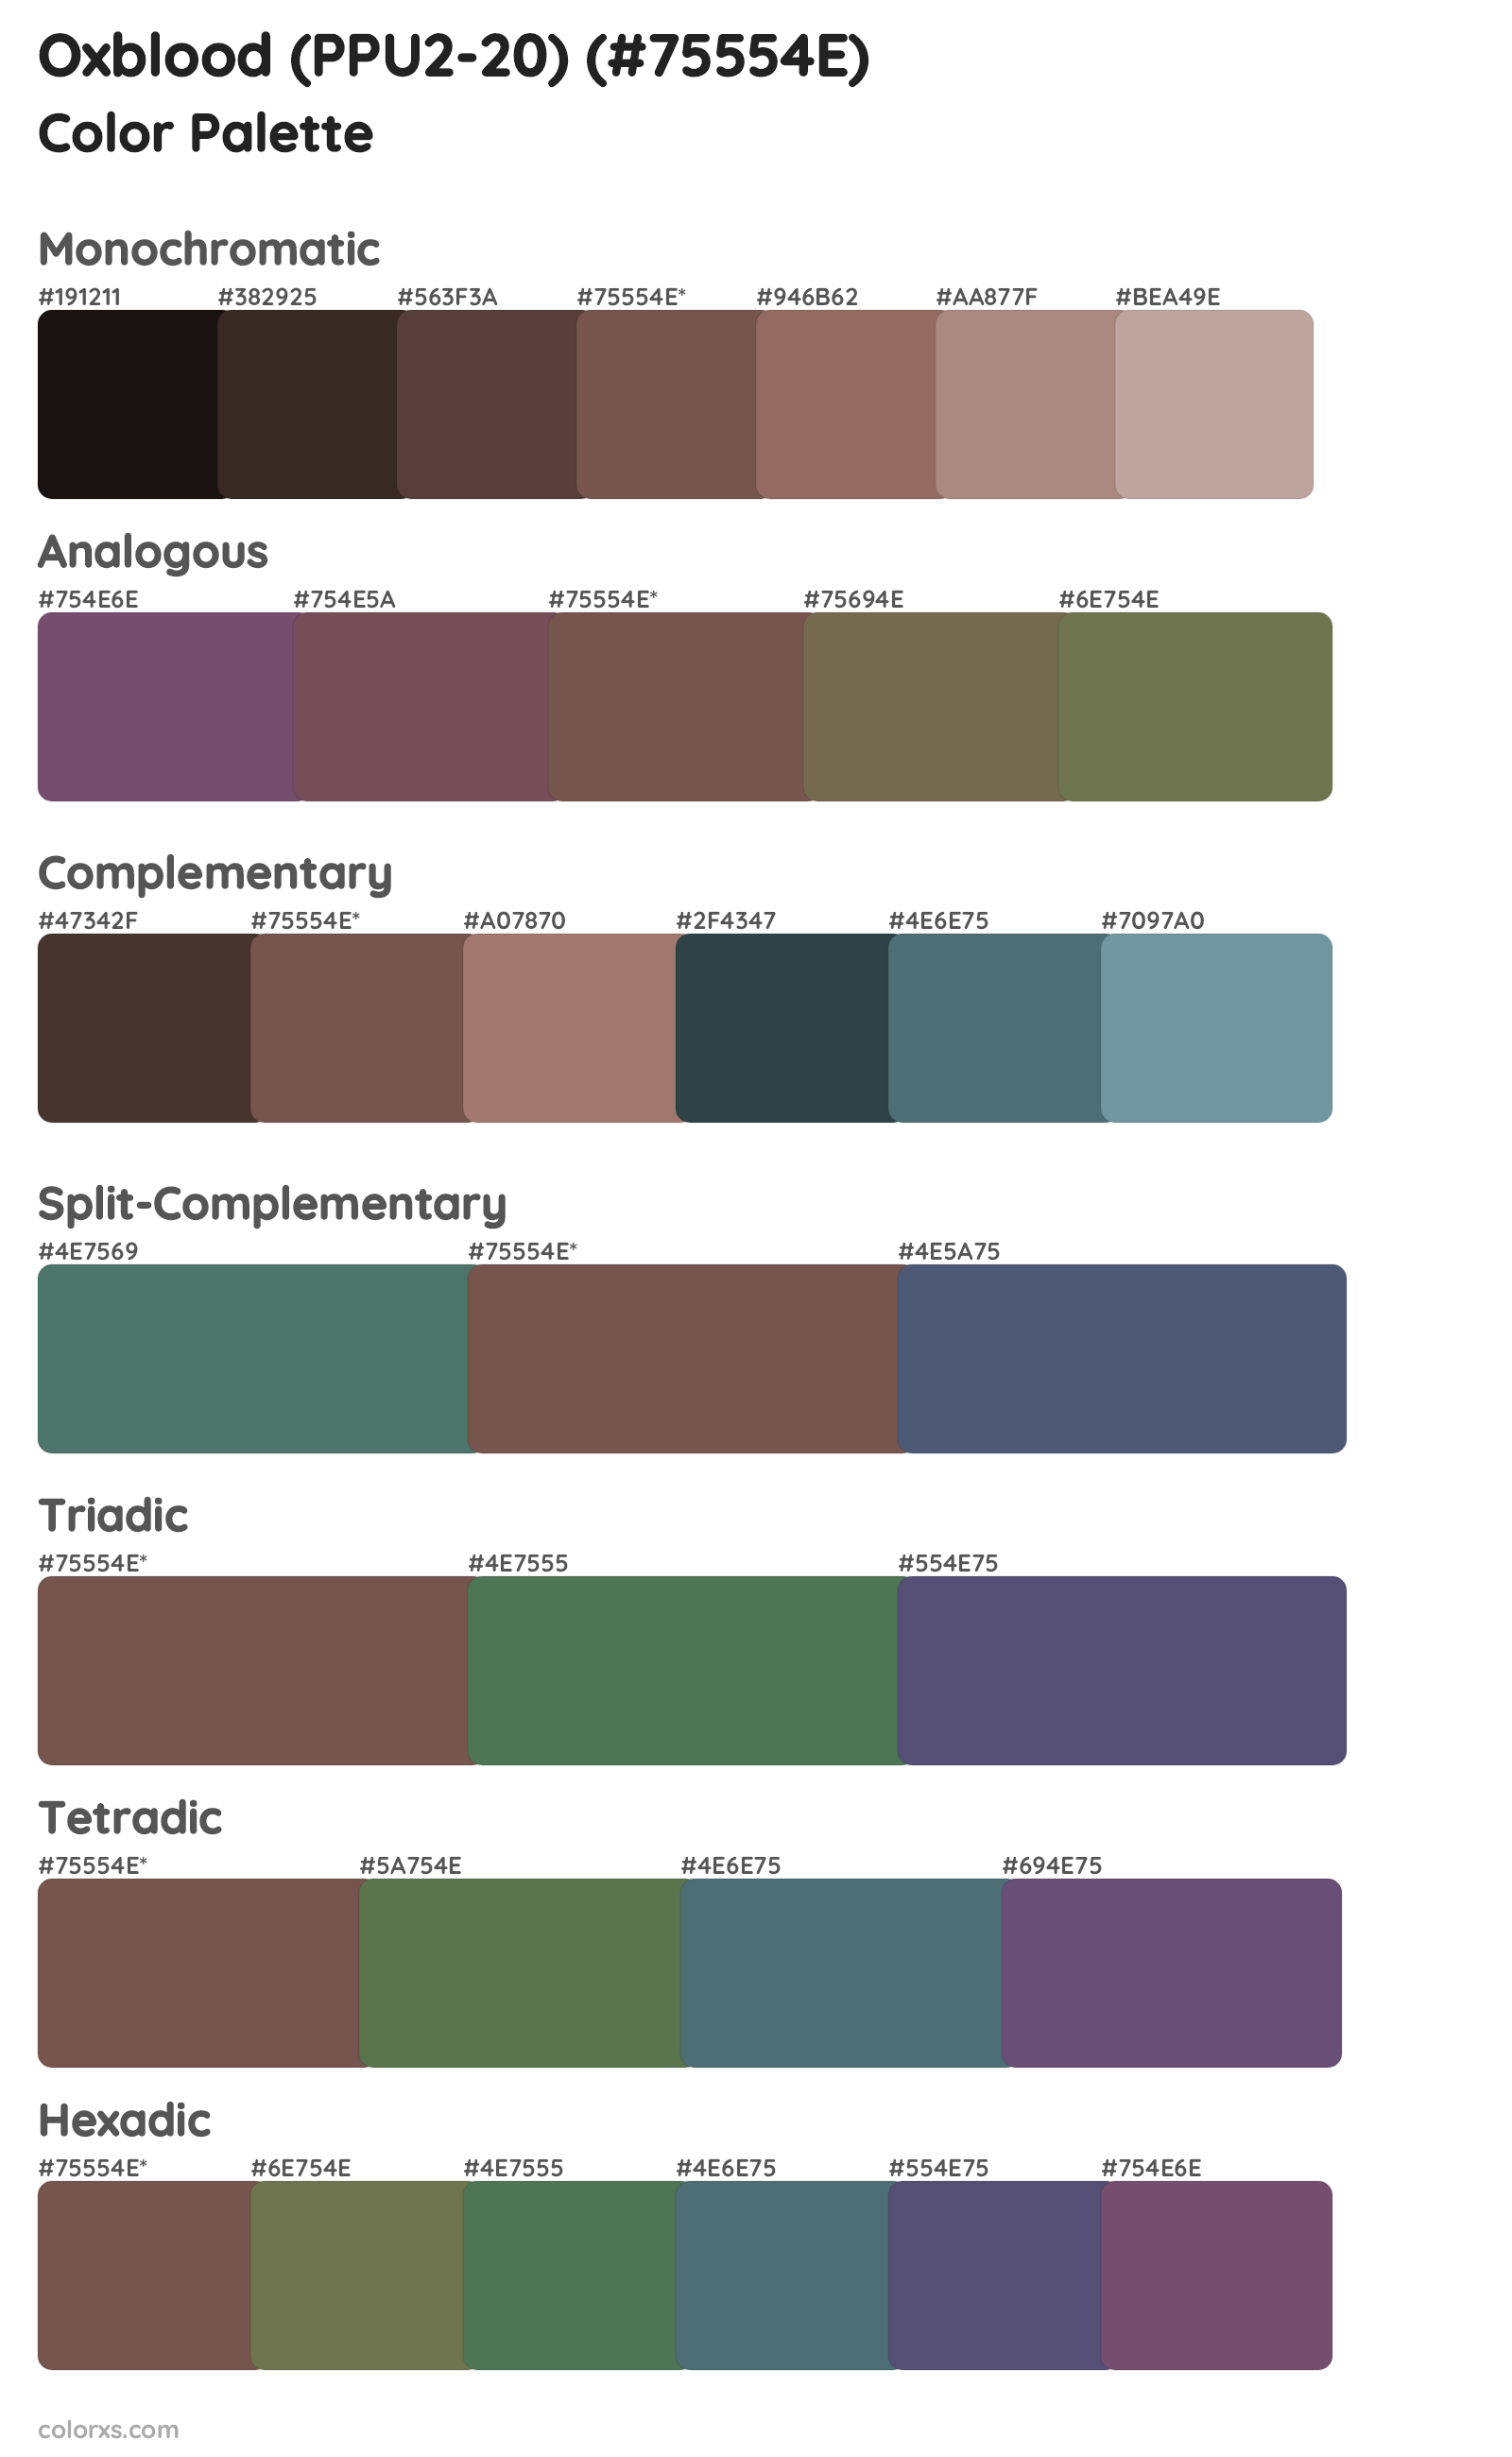 Oxblood (PPU2-20) Color Scheme Palettes